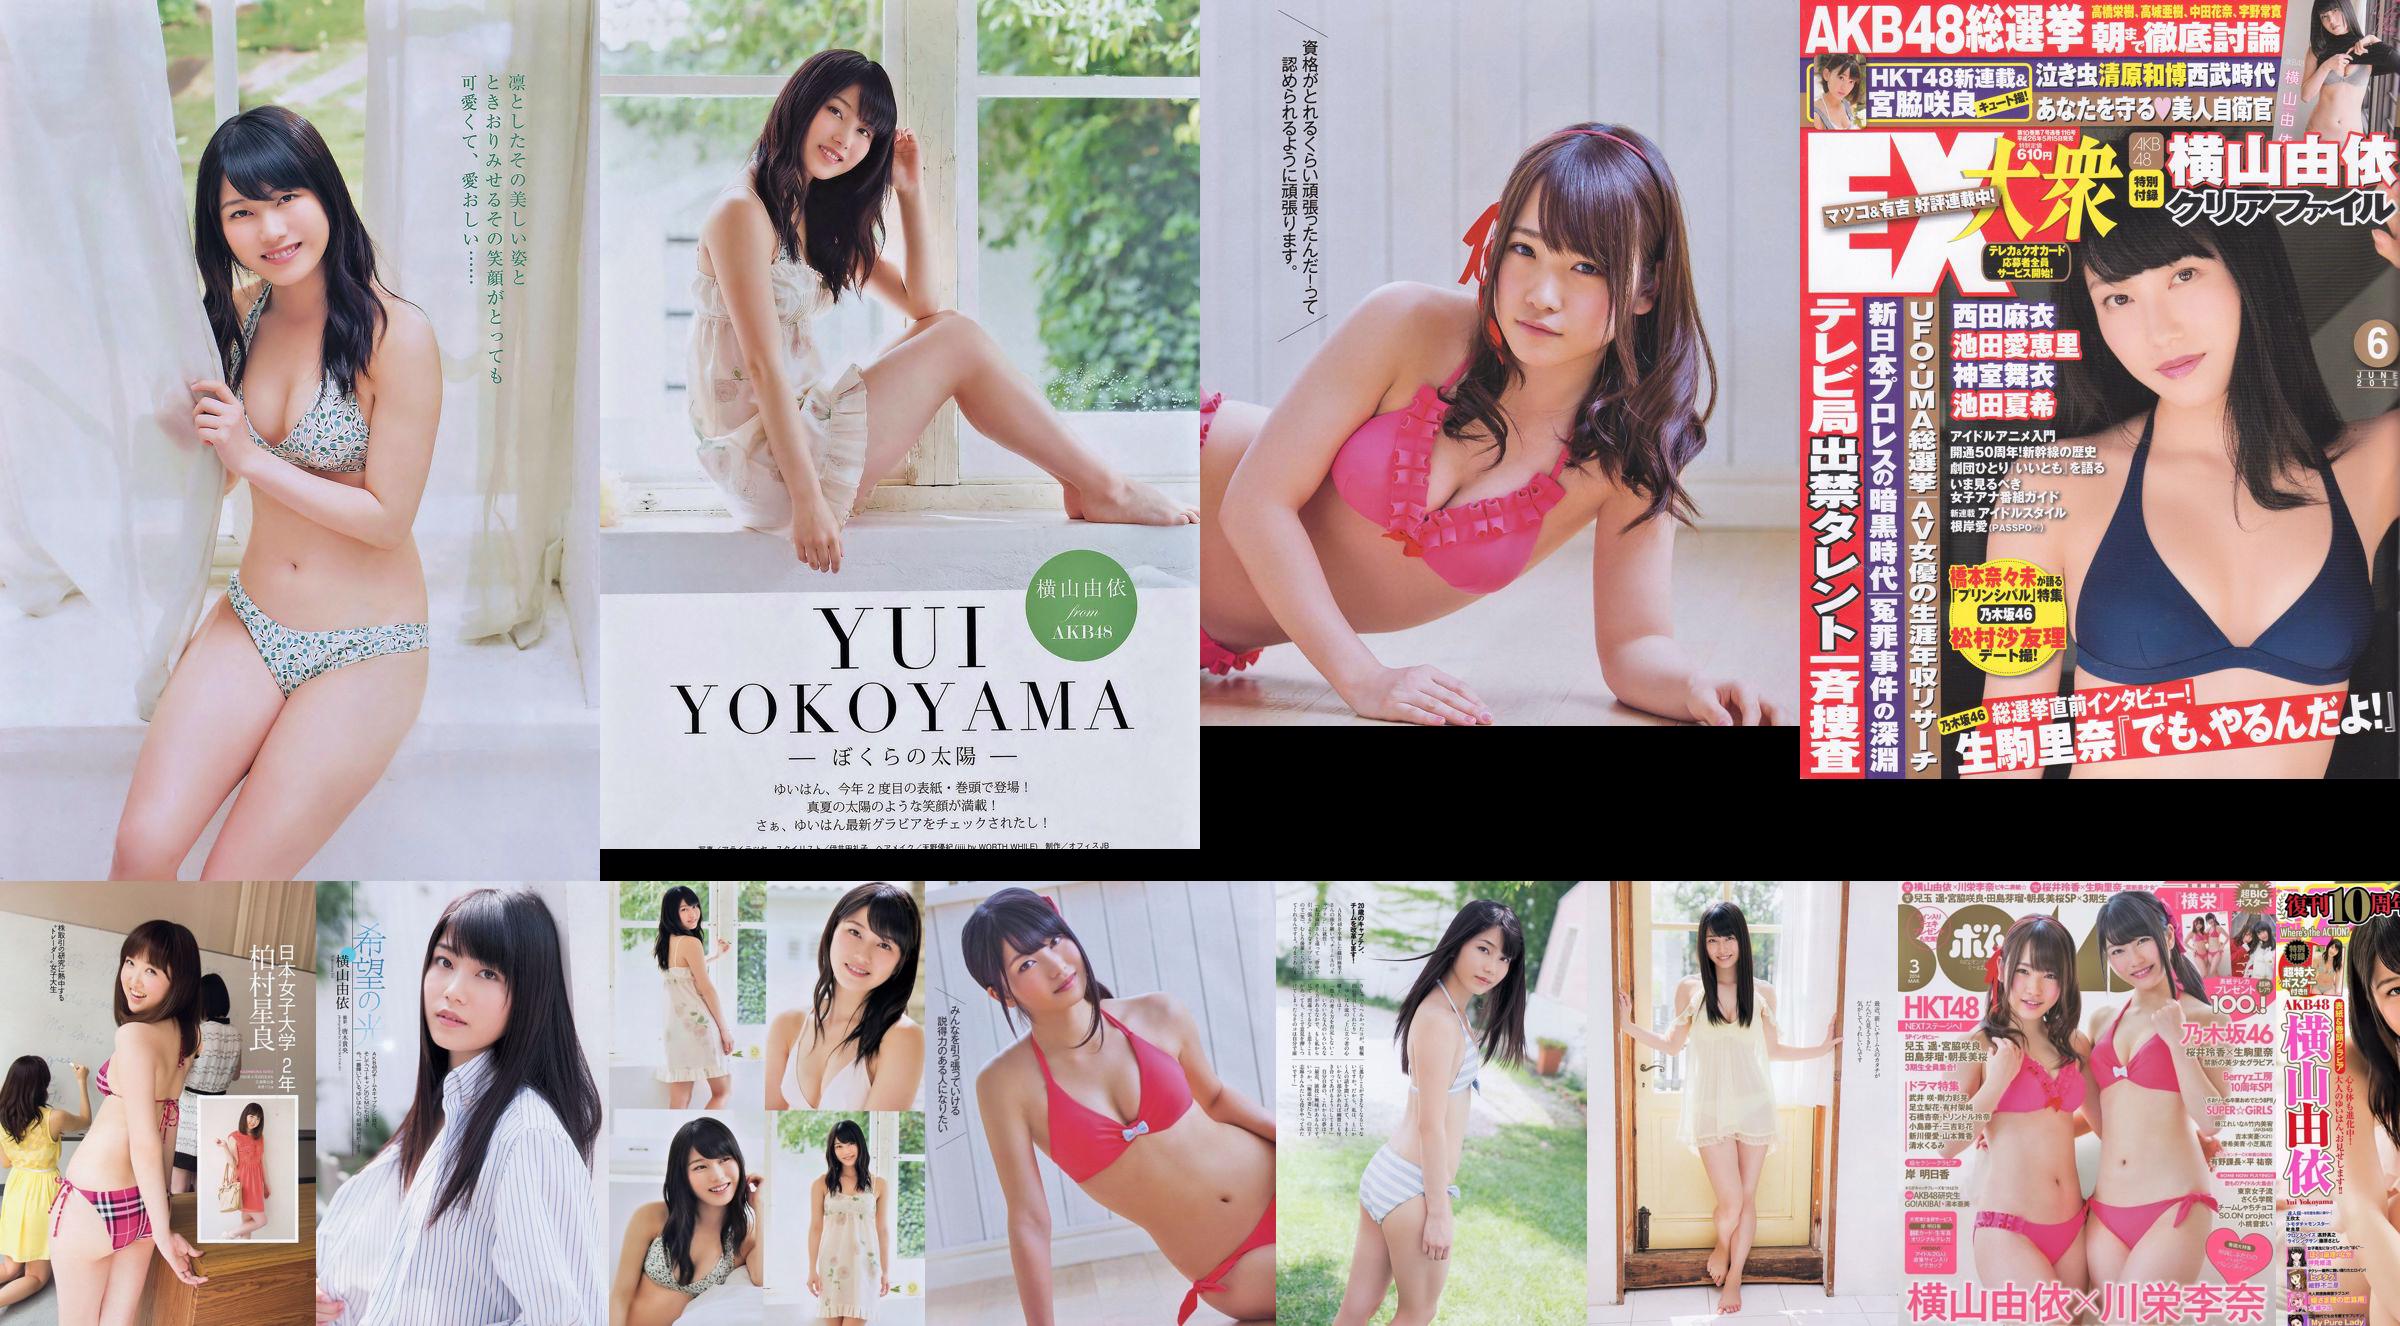 Momoiro Clover Z Yui Yokoyama Yua Shinkawa Mio Uema Anri Sugihara Kumi Yagami [Playboy settimanale] 2013 No.20 Foto Moshi No.8ec766 Pagina 1